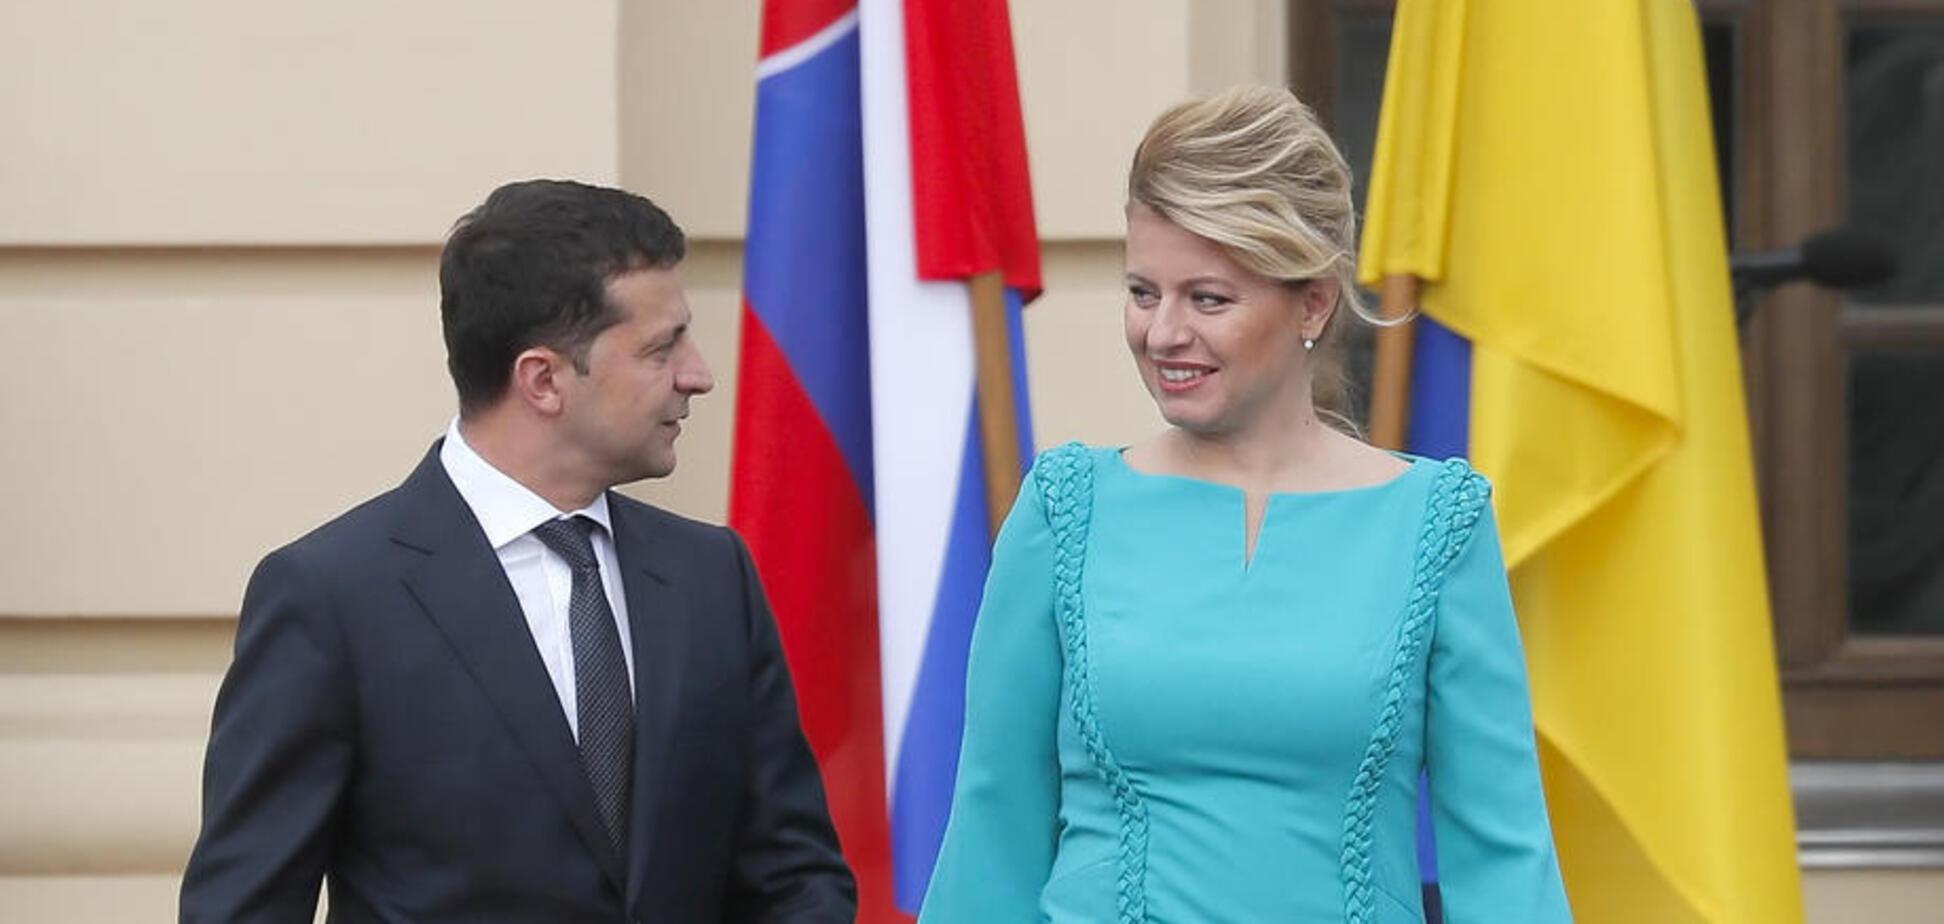 Ukrajina získala podporu zo Slovenska. Podpísanie vyhlásenia o európskej perspektíve Ukrajiny